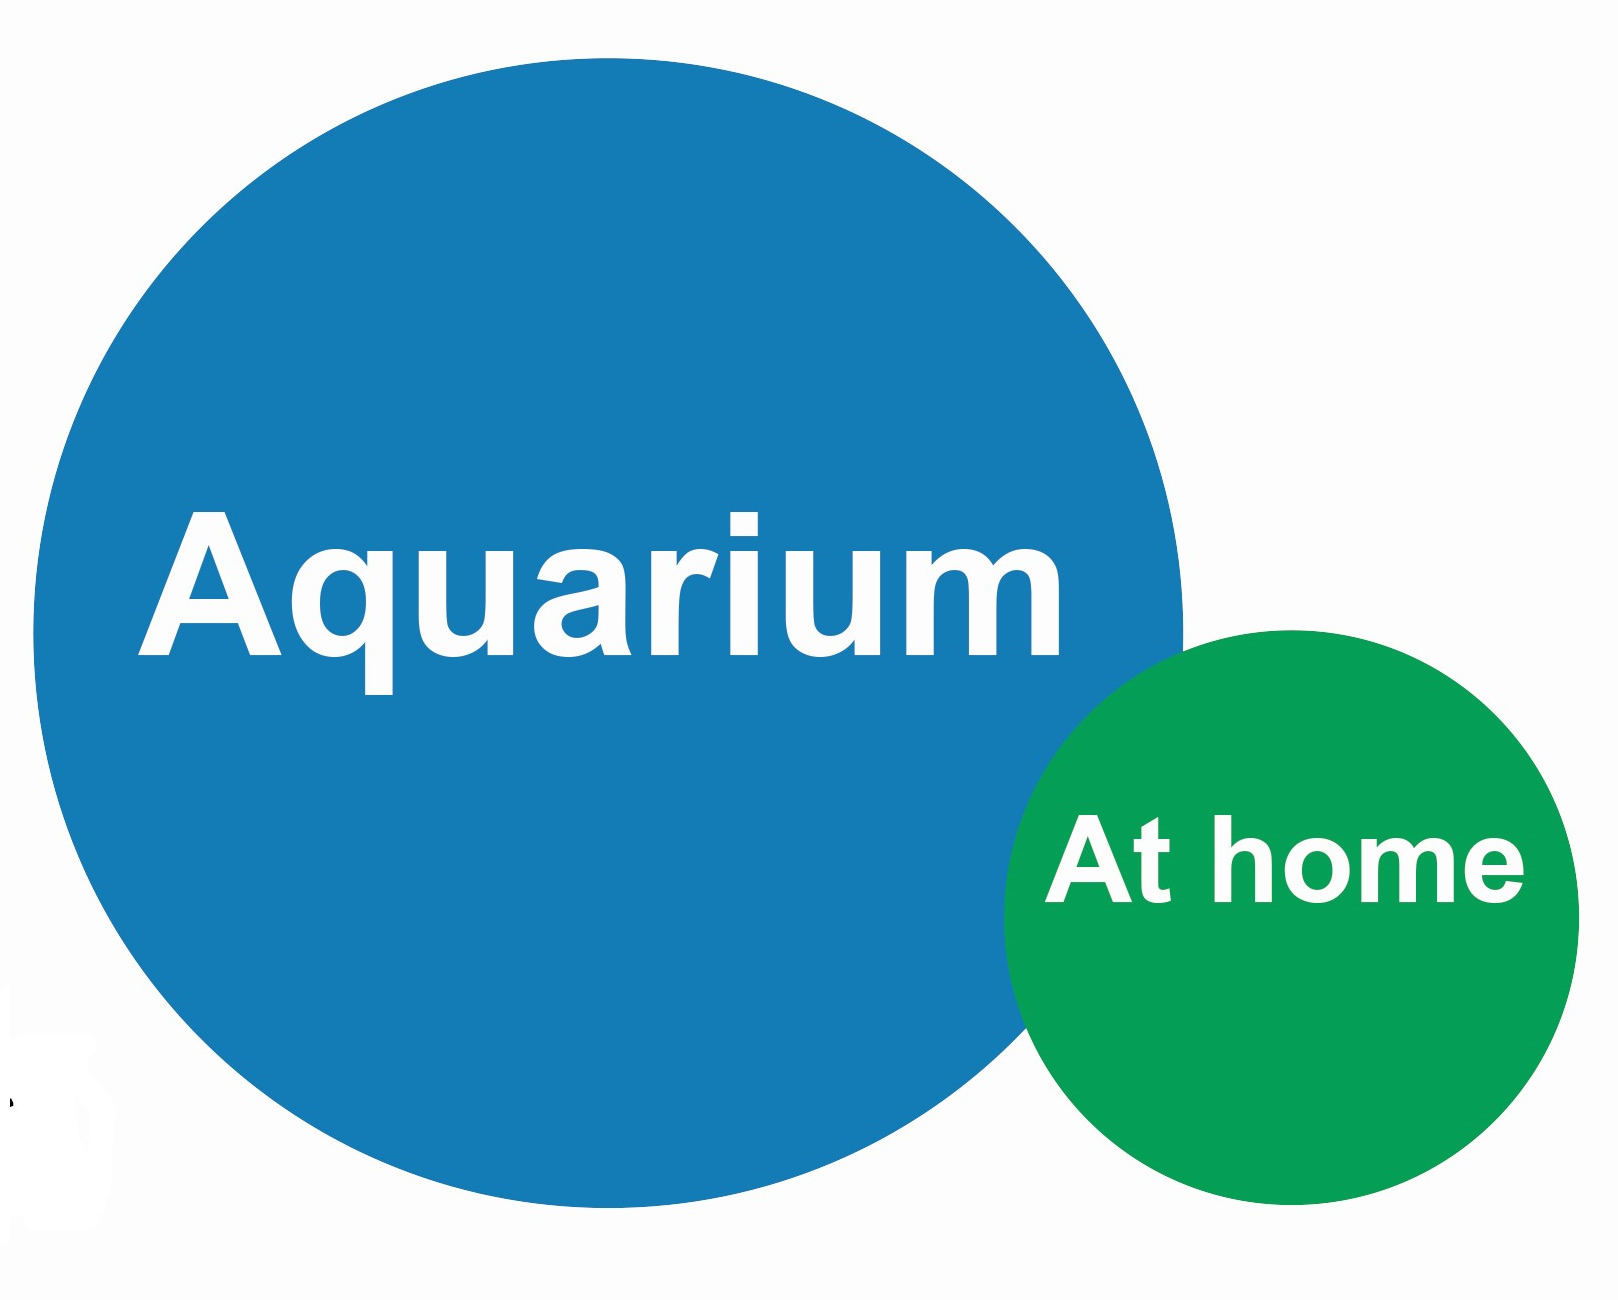 Aquarium at home